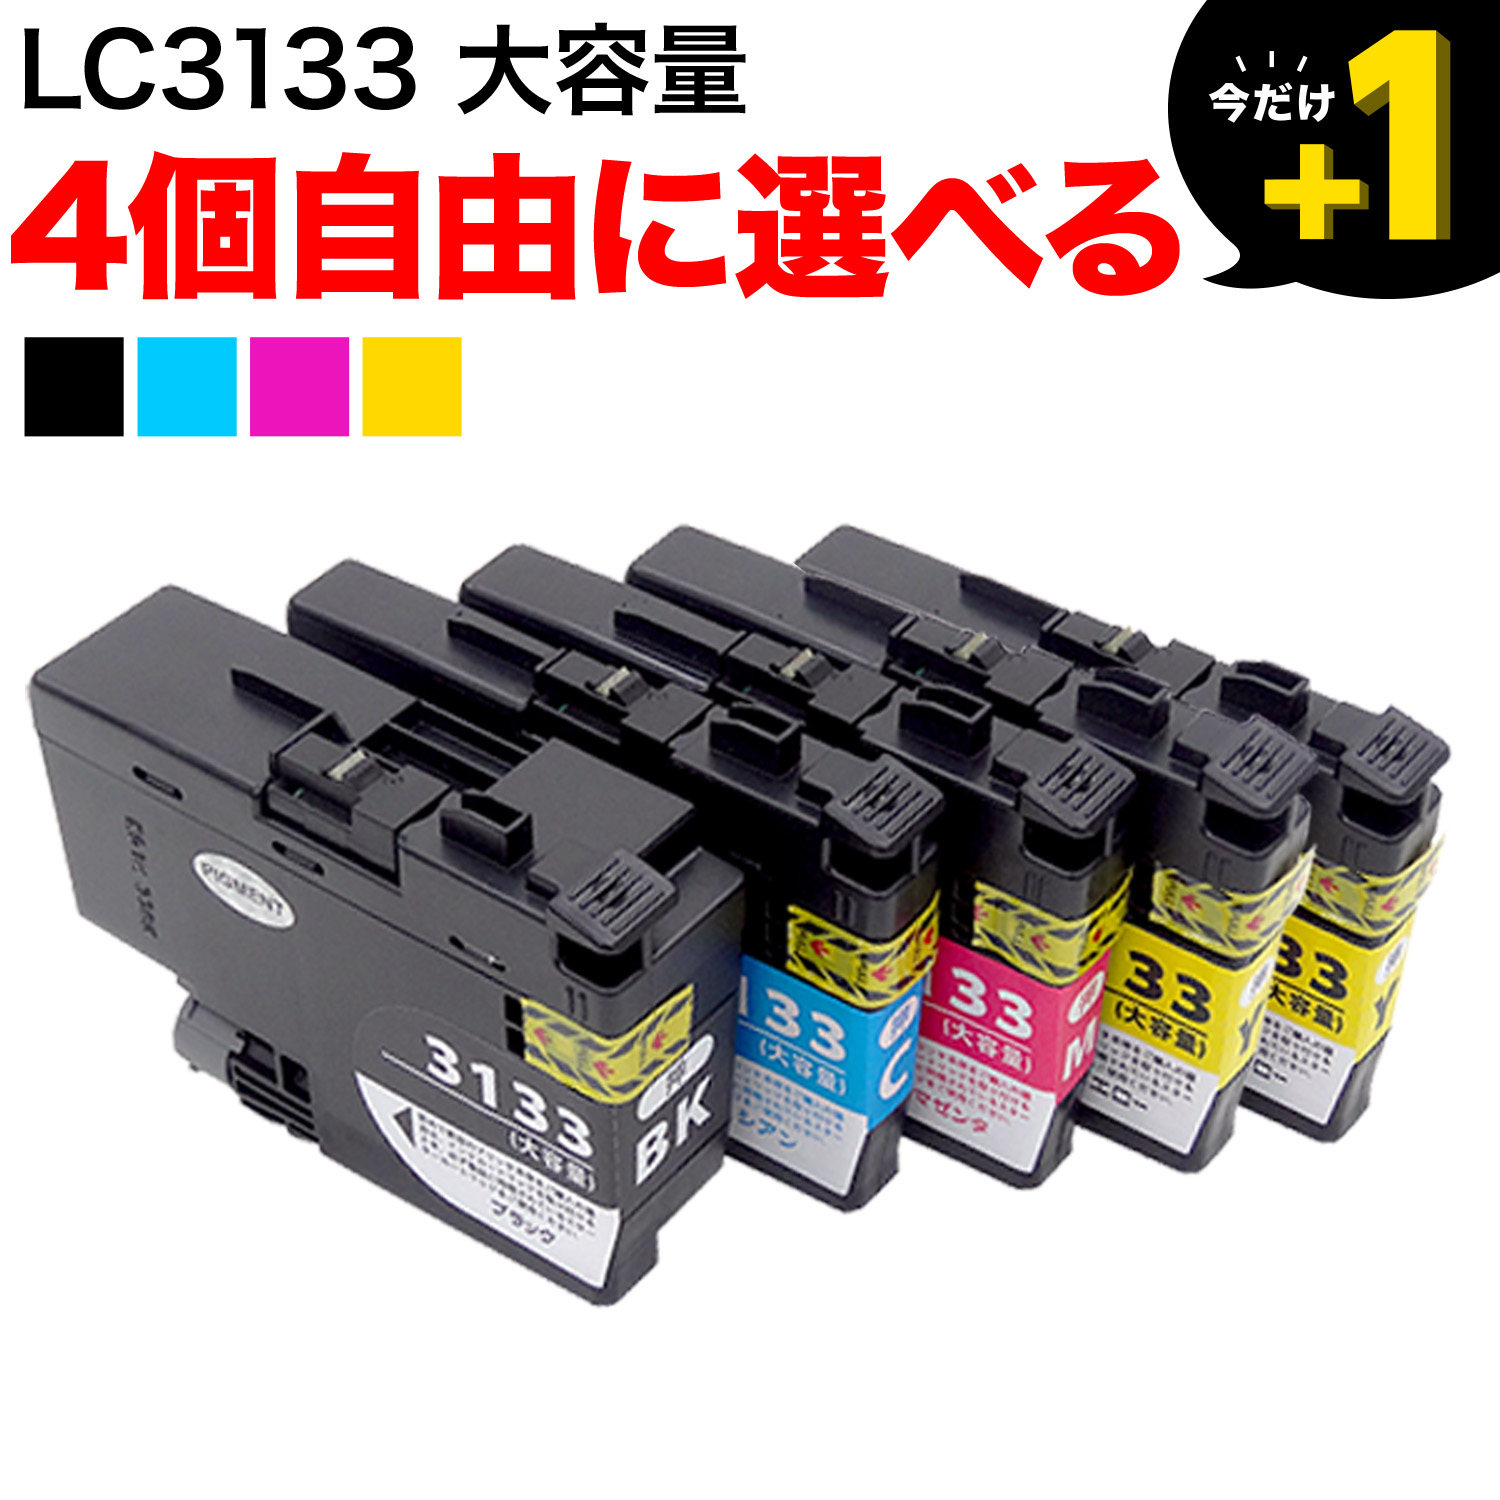 LC3133 ブラザー用 互換インクカートリッジ 自由選択4個セット フリーチョイス【送料無料】 選べる4個セット（品番：QR-FC-LC3133-4 ）詳細情報【こまもの本舗】